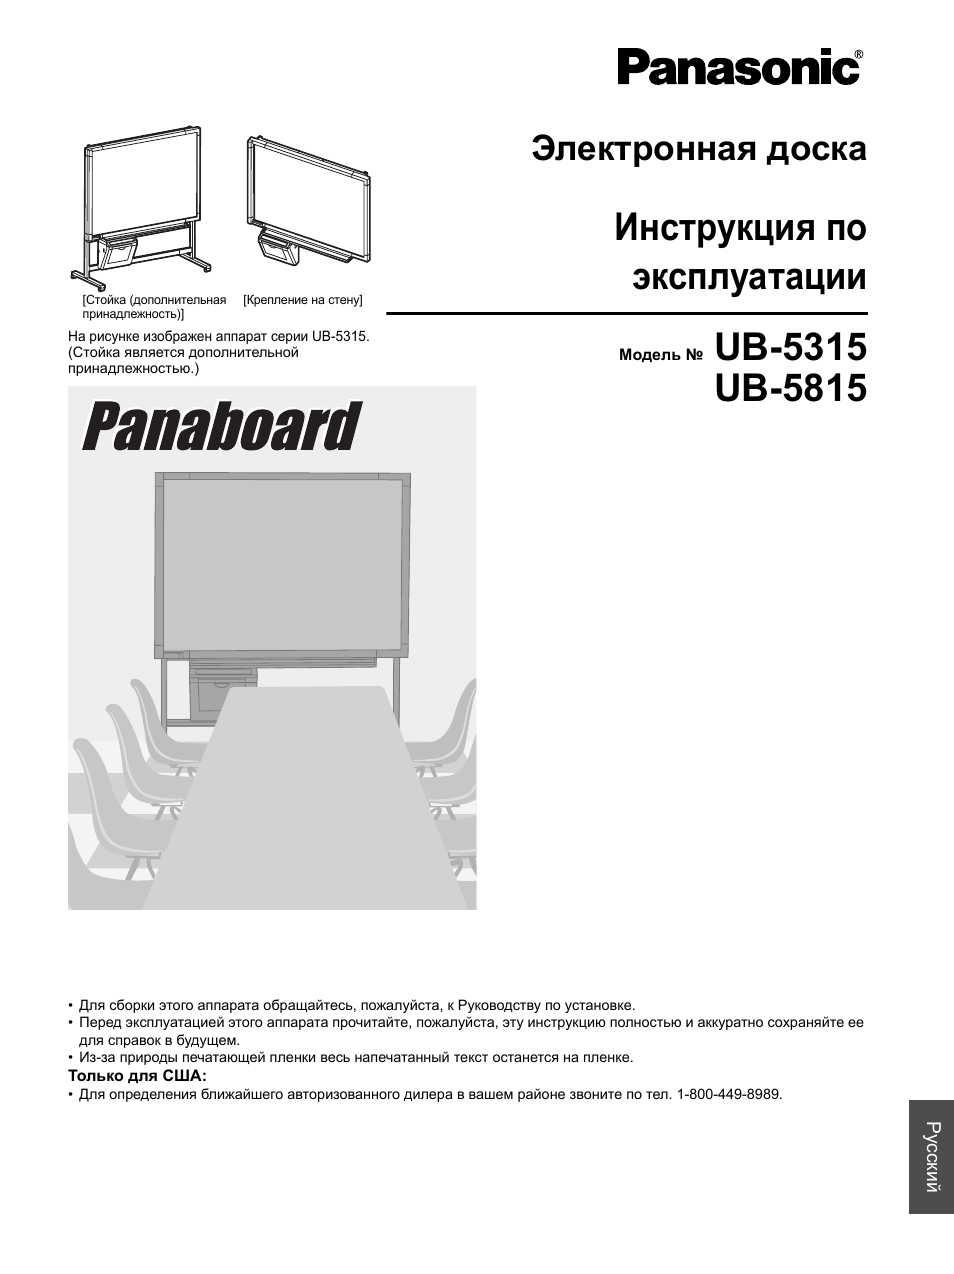 Инструкция по эксплуатации Panasonic UB-5315 | 36 страниц